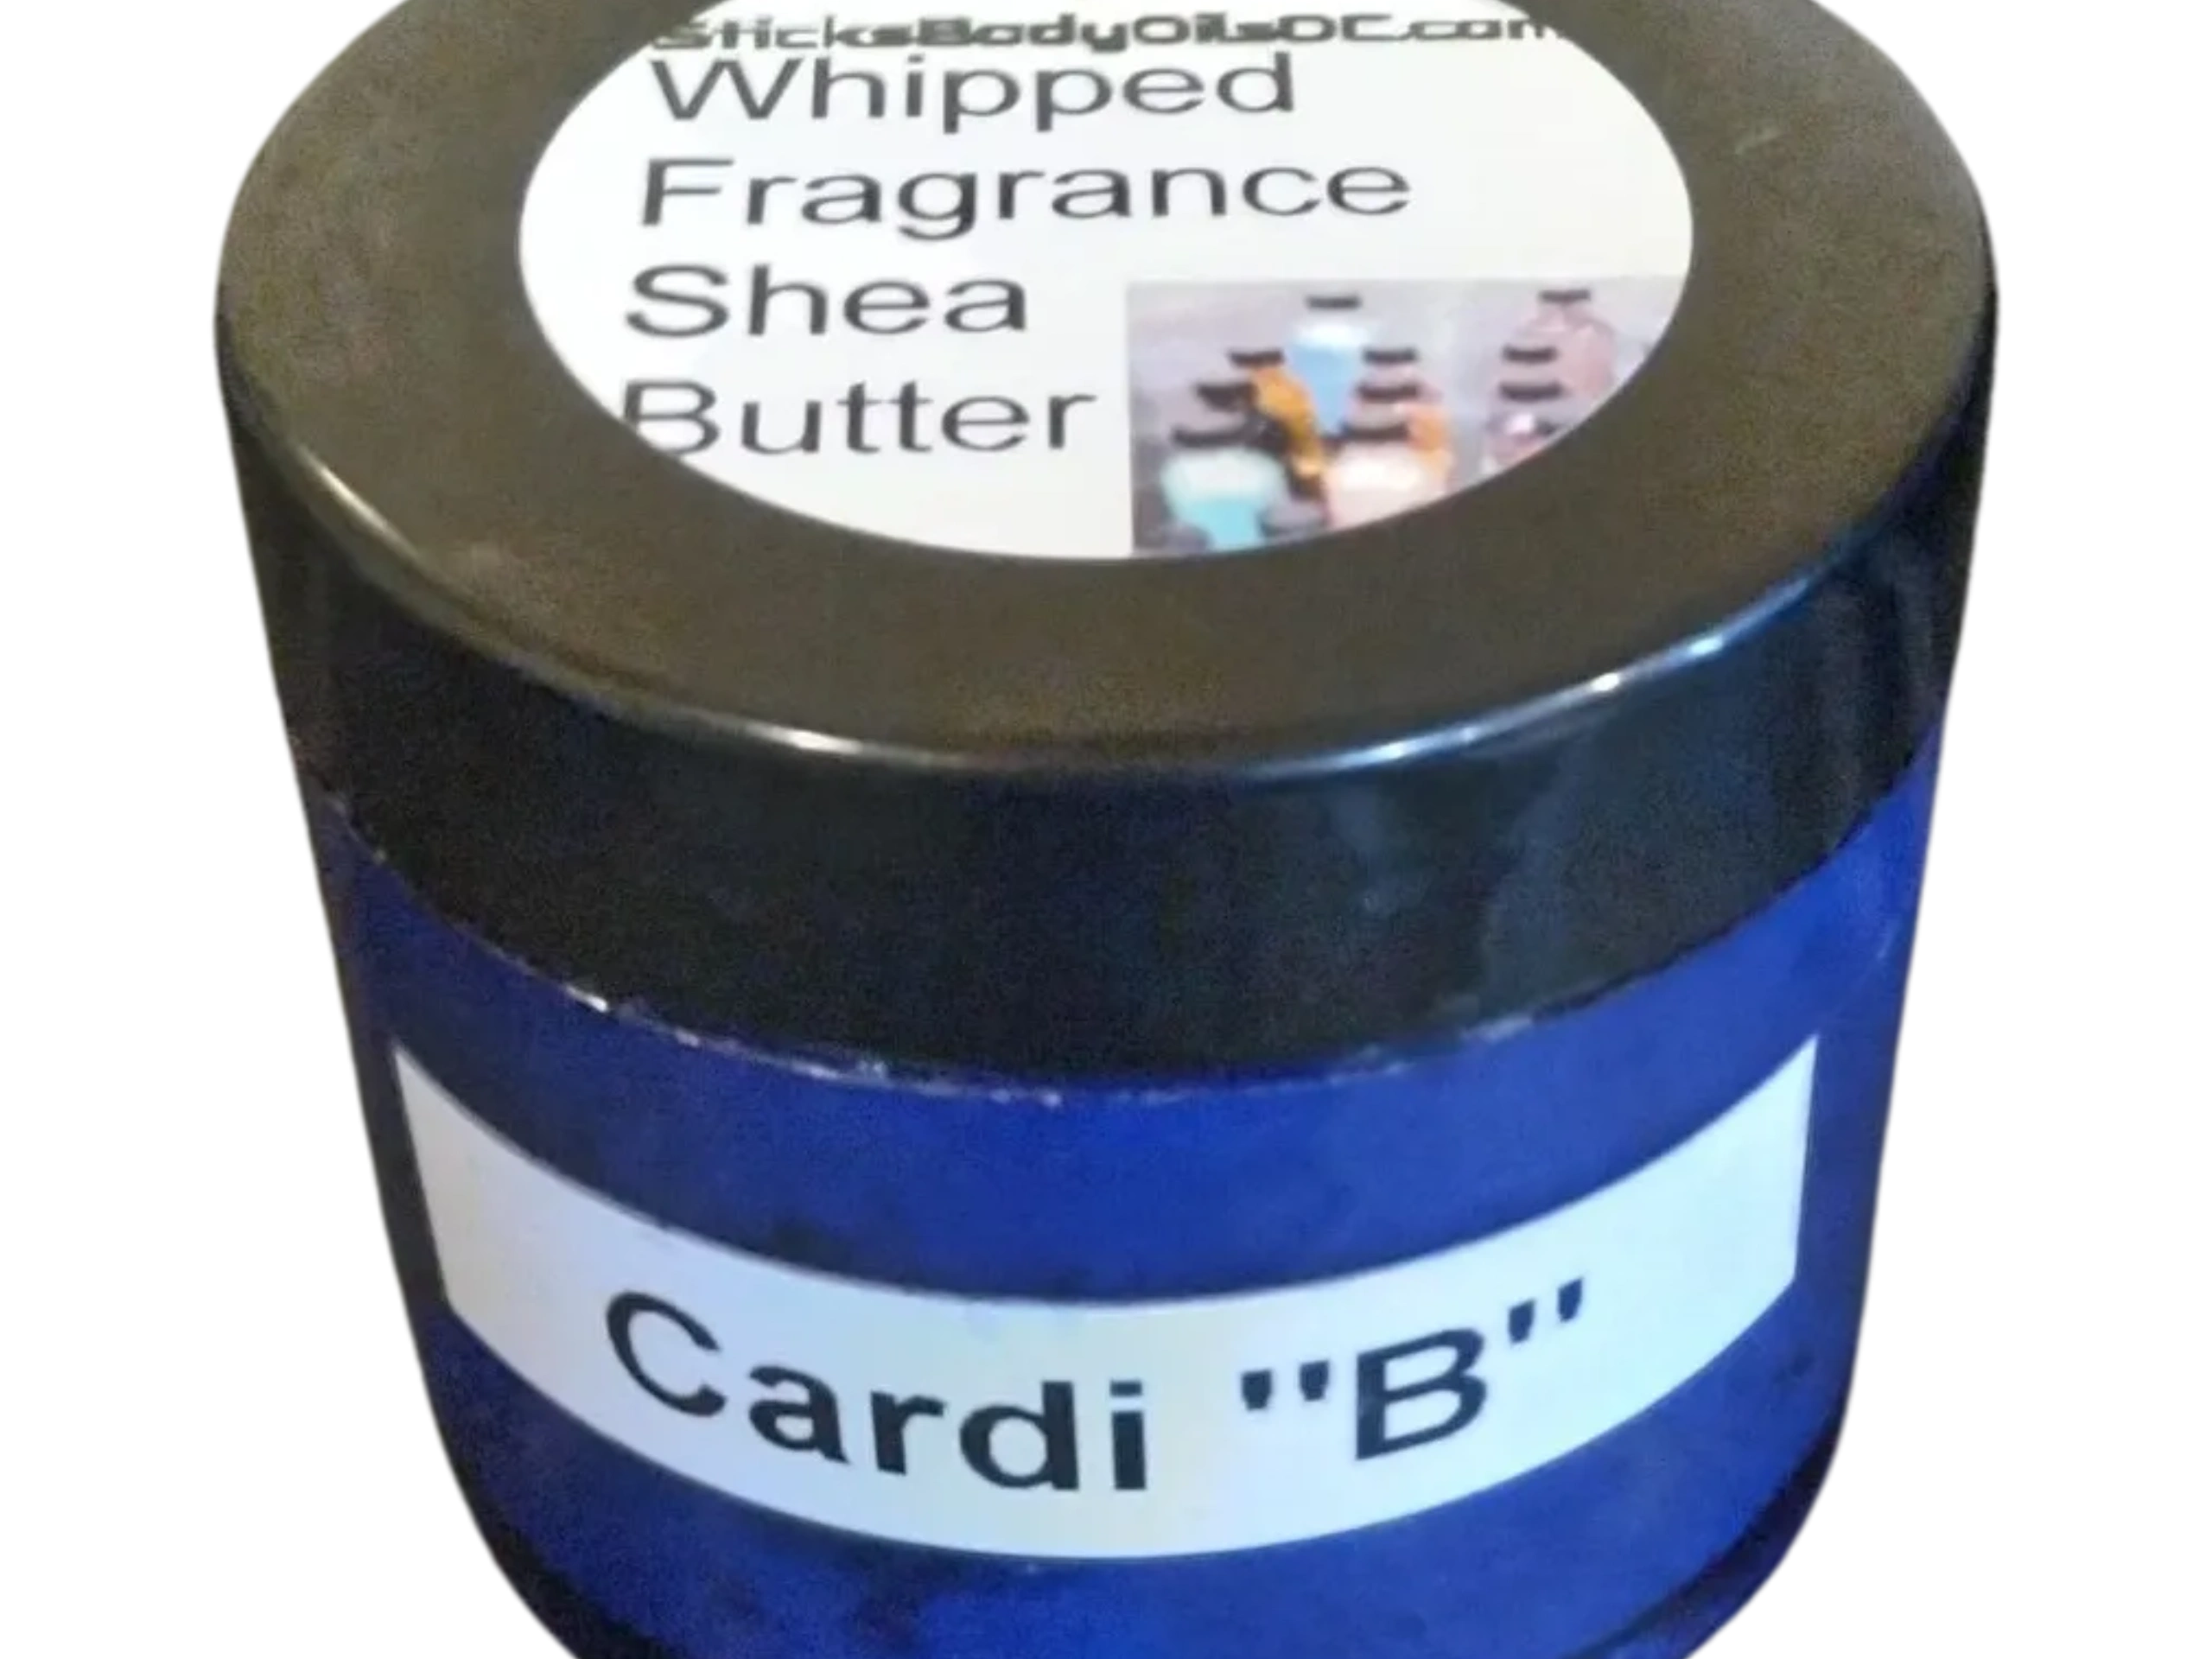 Whipped Fragrance Shea Butter